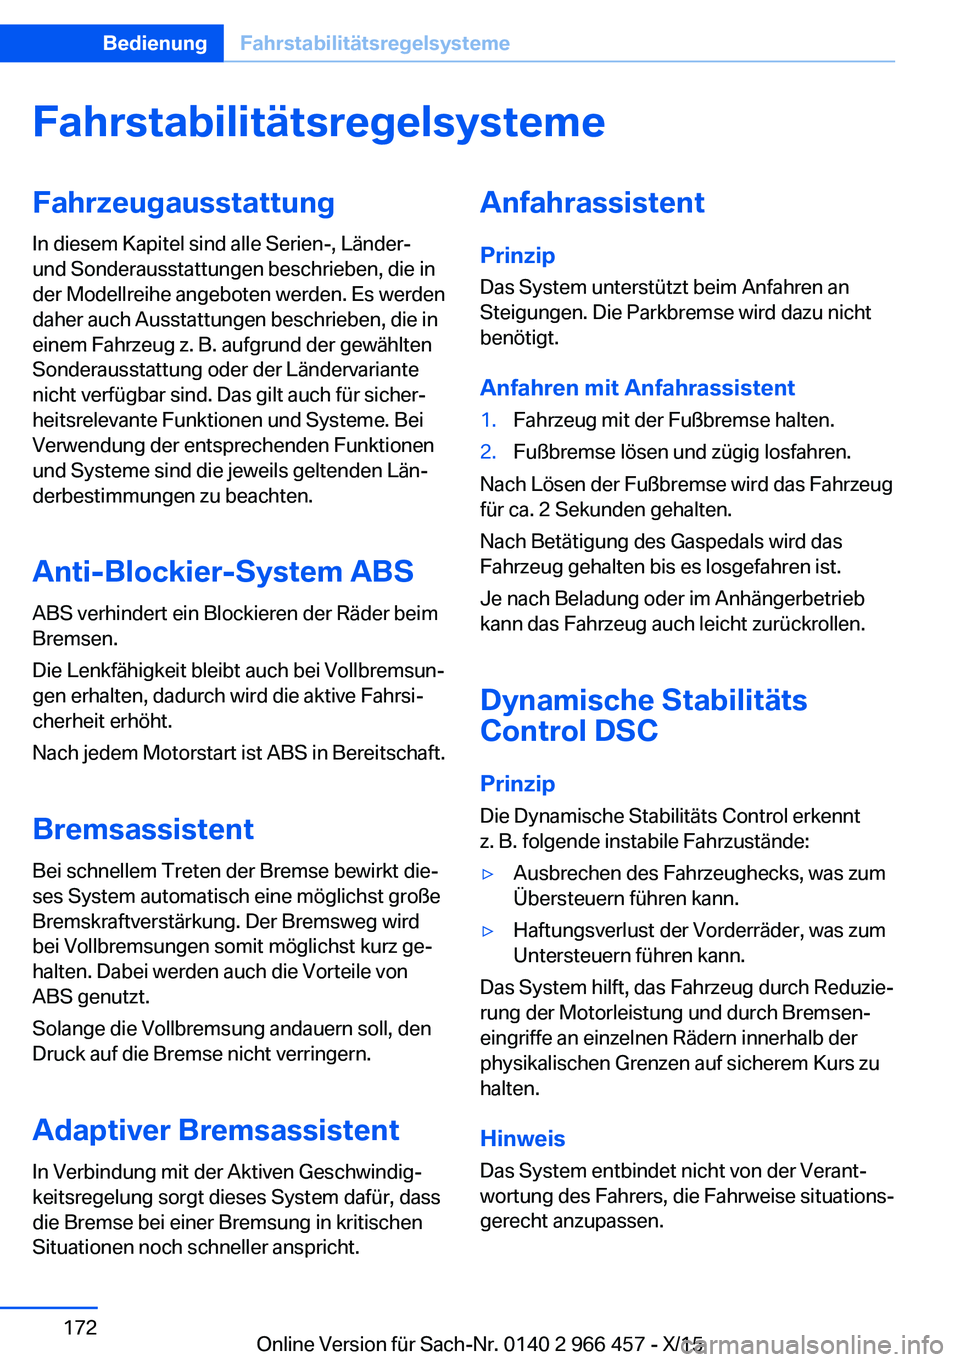 BMW 7 SERIES 2016  Betriebsanleitungen (in German) FahrstabilitätsregelsystemeFahrzeugausstattung
In diesem Kapitel sind alle Serien-, Länder-
und Sonderausstattungen beschrieben, die in
der Modellreihe angeboten werden. Es werden
daher auch Ausstat